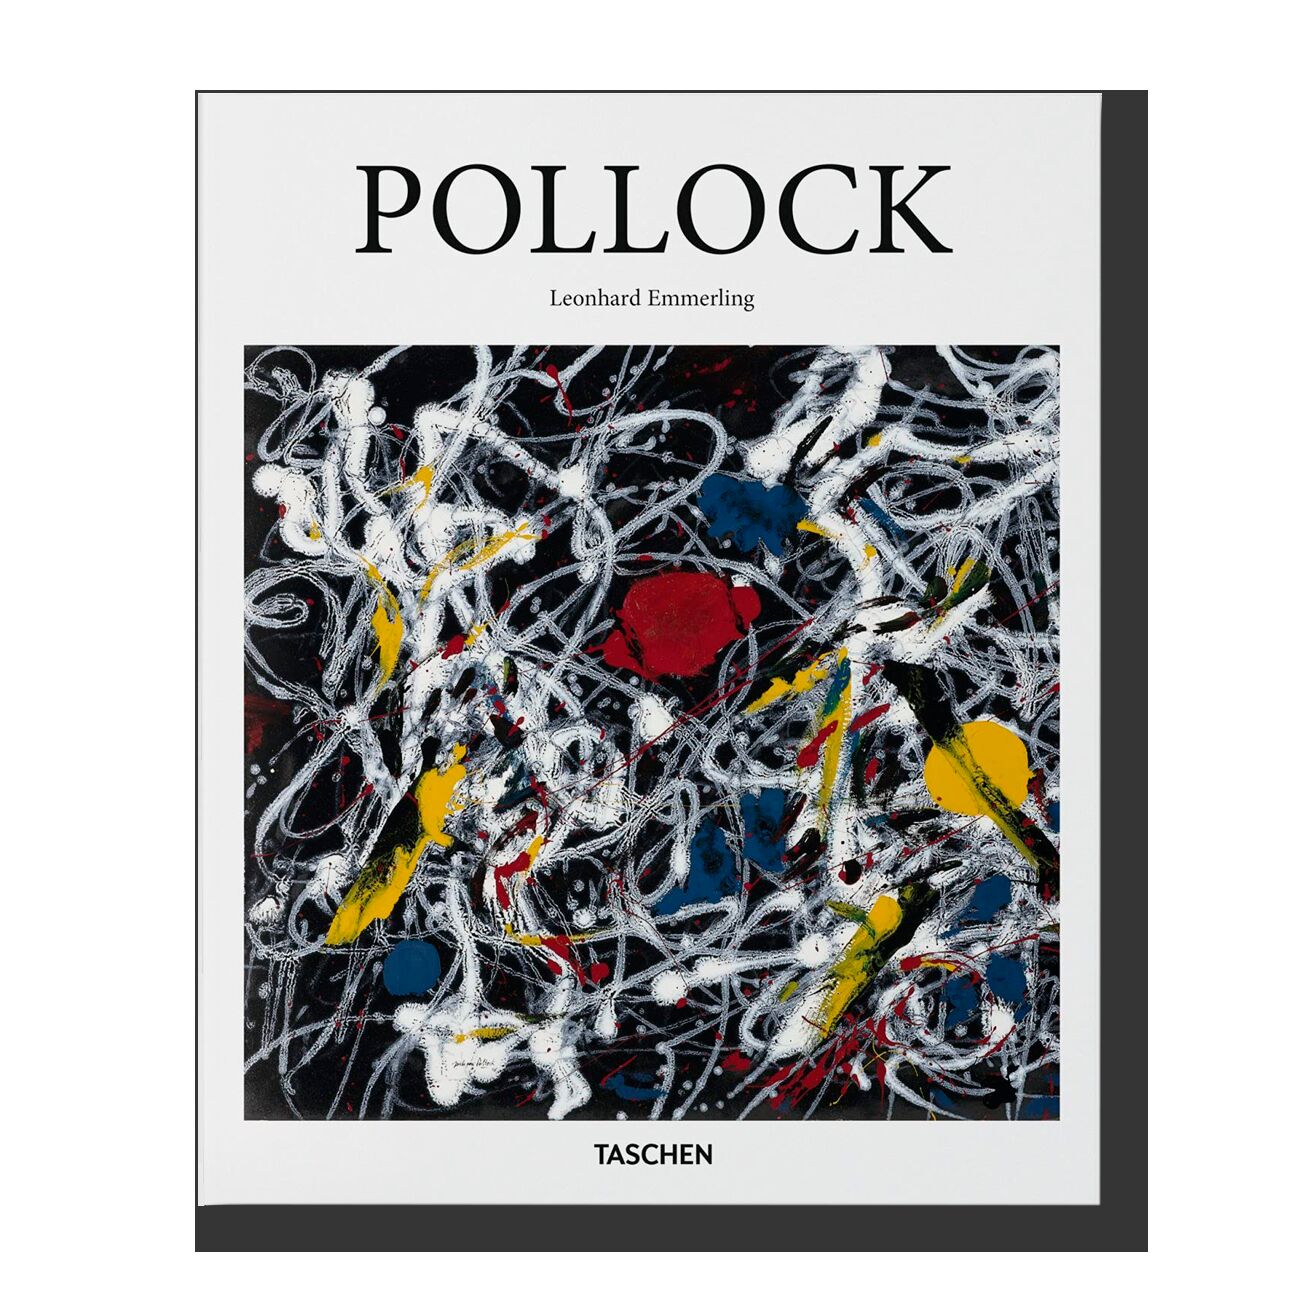 Pollock (Basic Art Series)